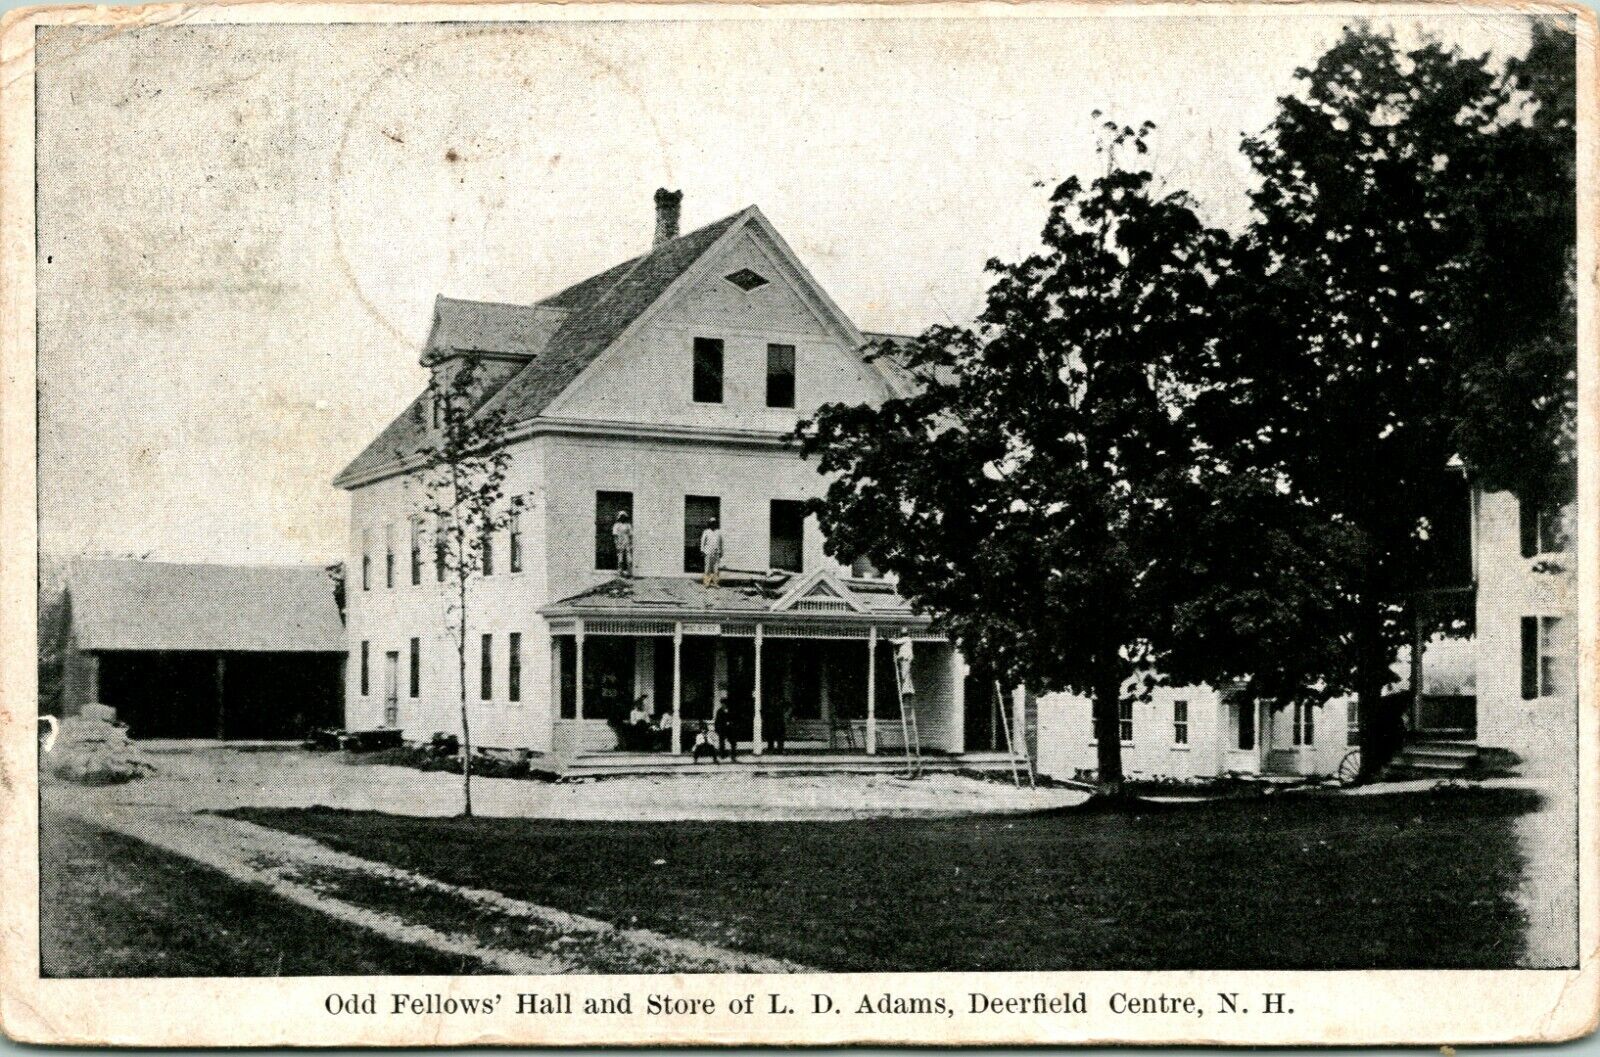 1908 Postcard Deerfield Center NH Odd Fellows' Hall & Store of I D Adams 2 NH